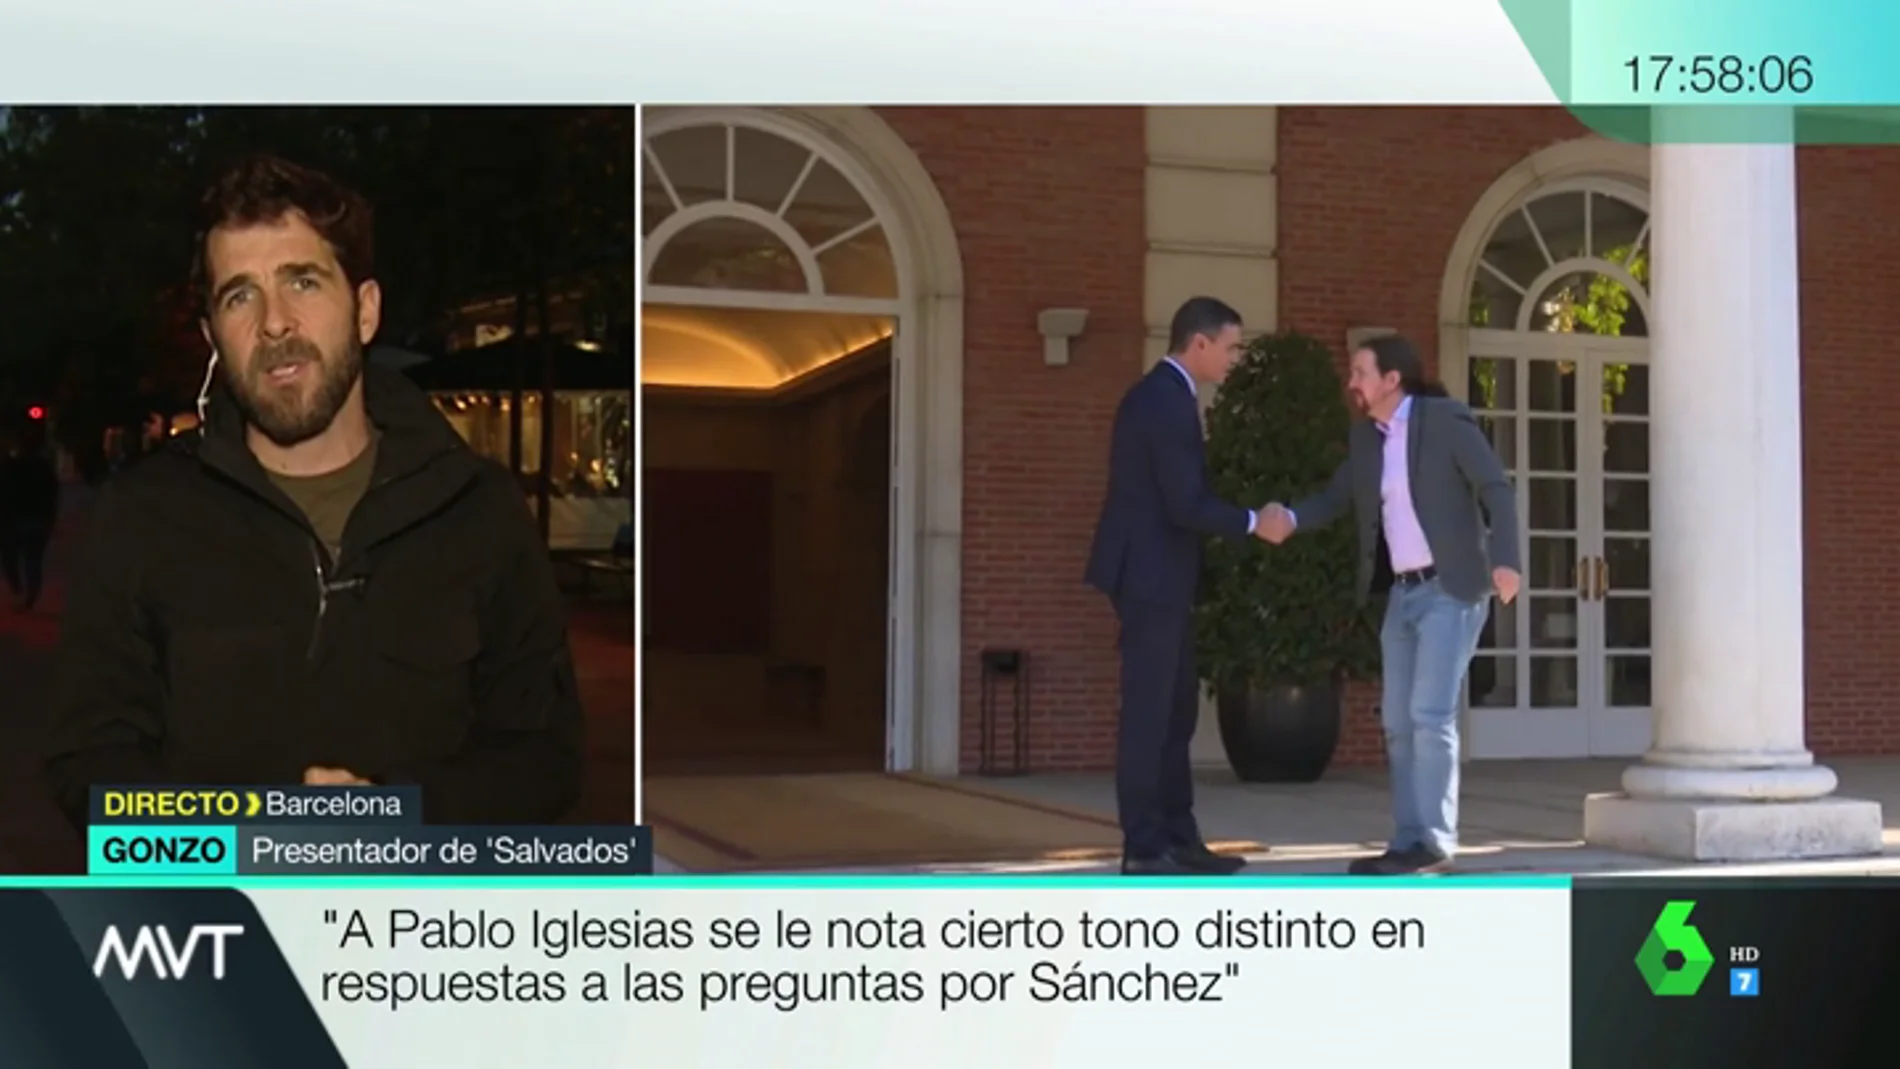 Pablo Iglesias se enfrenta al desencanto de sus militantes en Salvados: "La idea era que Sánchez también estuviera, pero no aceptó"